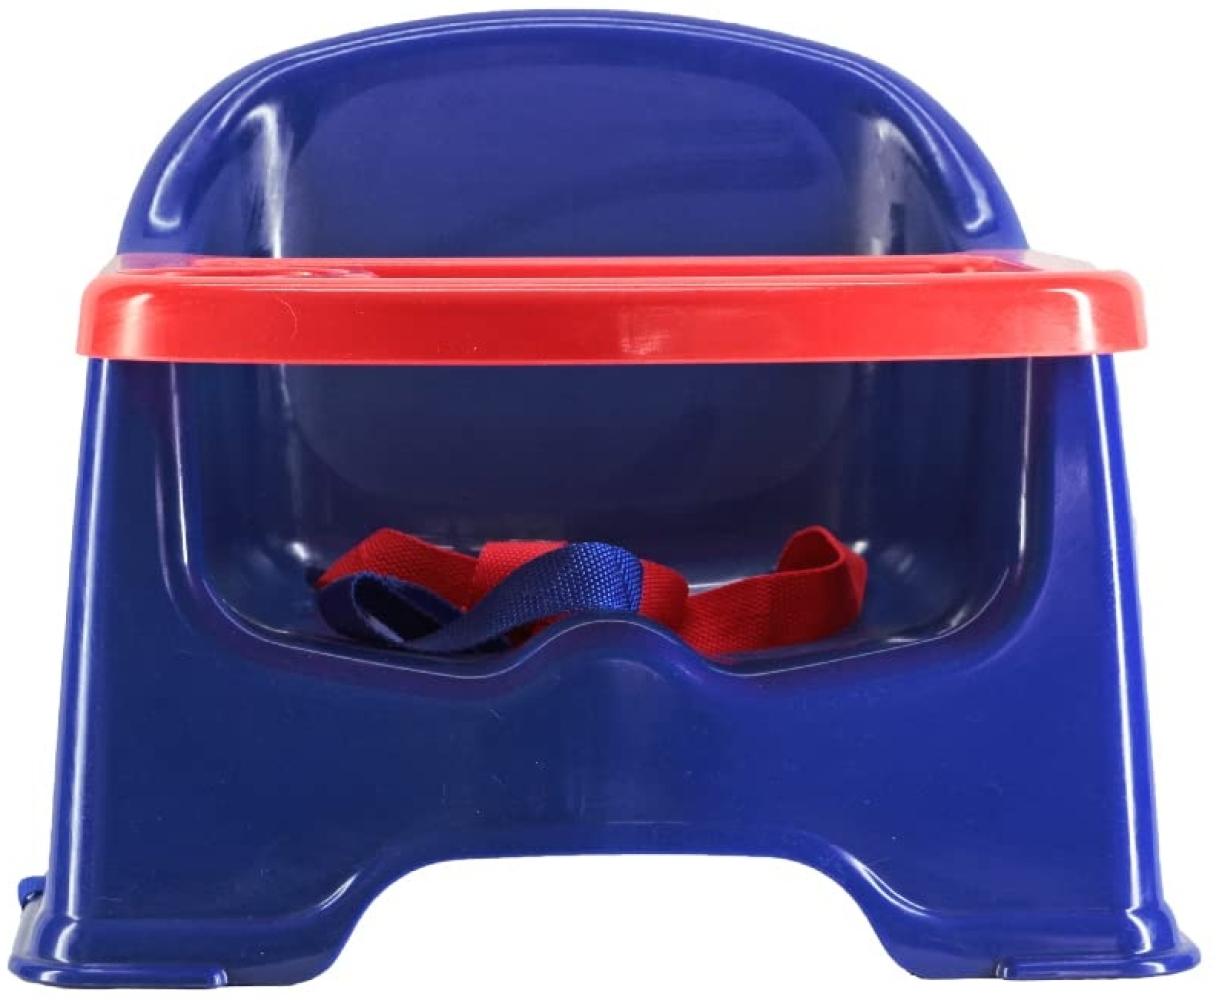 Vital Innovations Sitzerhöhung mit Befestigungsgurten und Tablett, blau/rot Bild 1